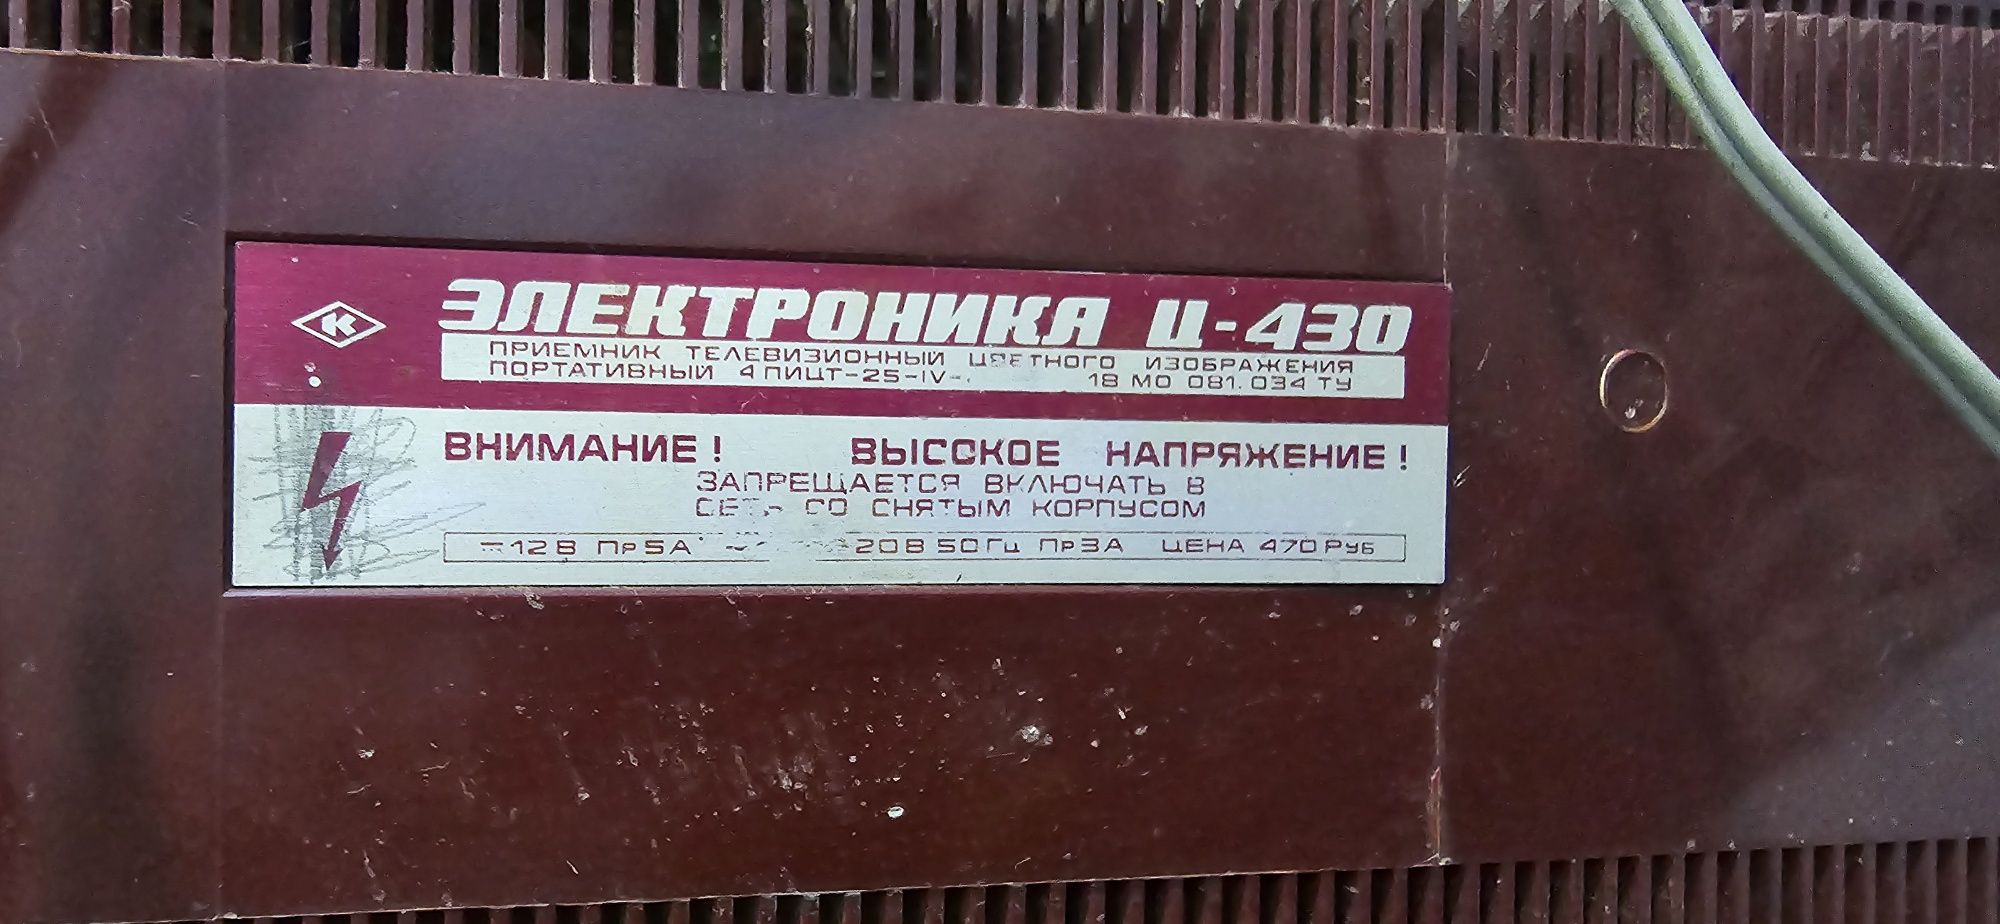 Антиквар телевизор Электроника ц-430